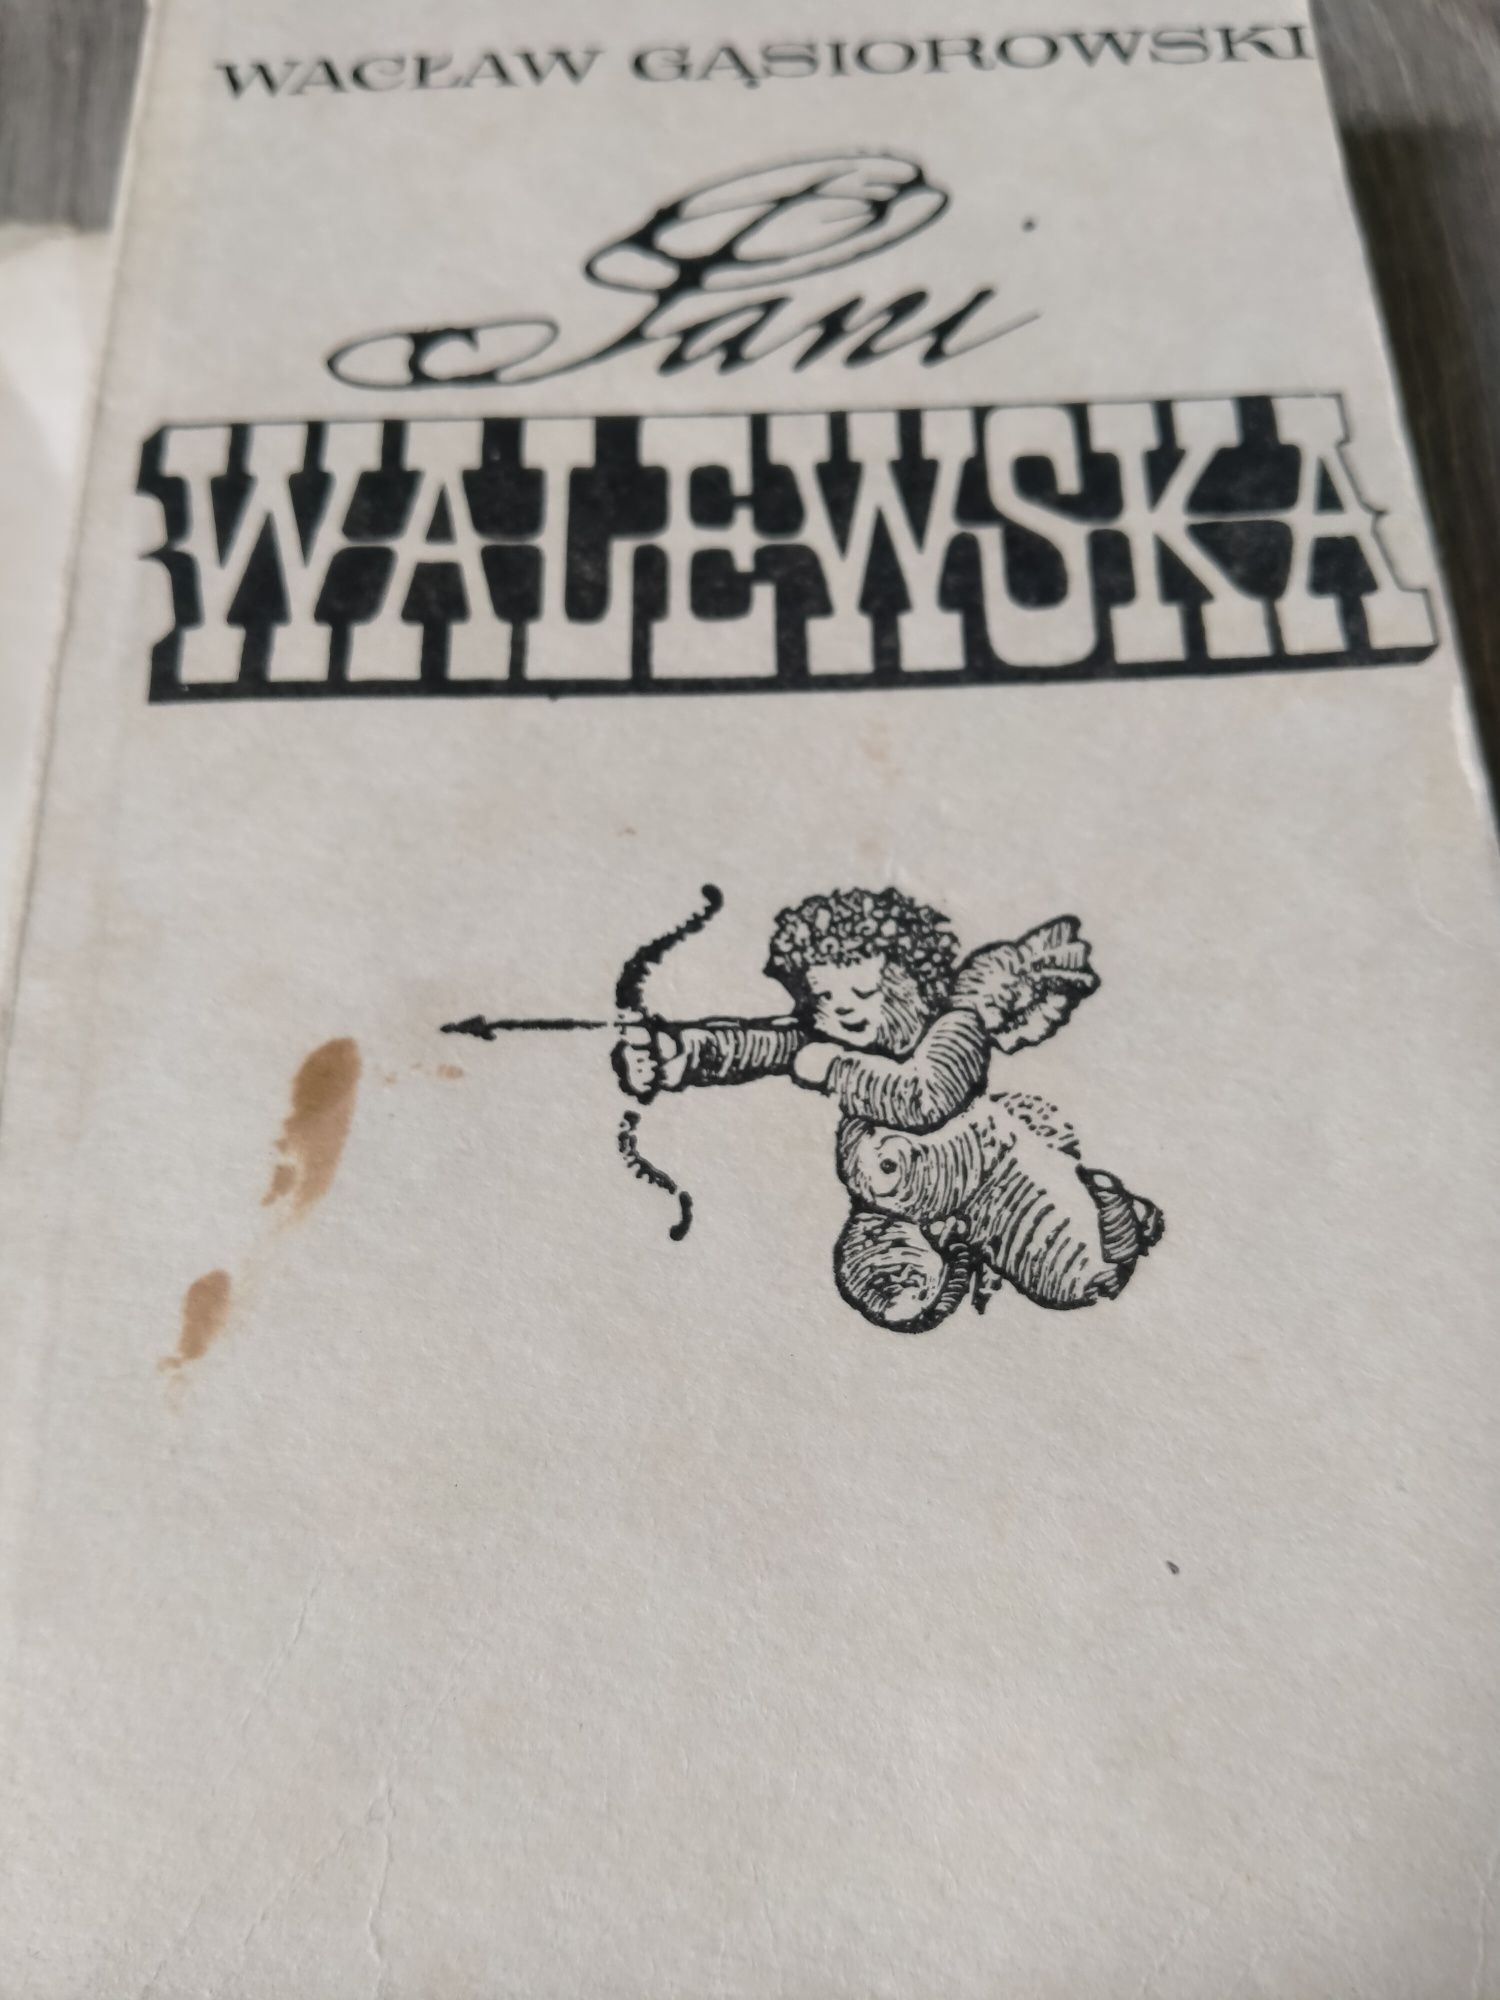 Wacław Gąsiorowski Pani Walewska